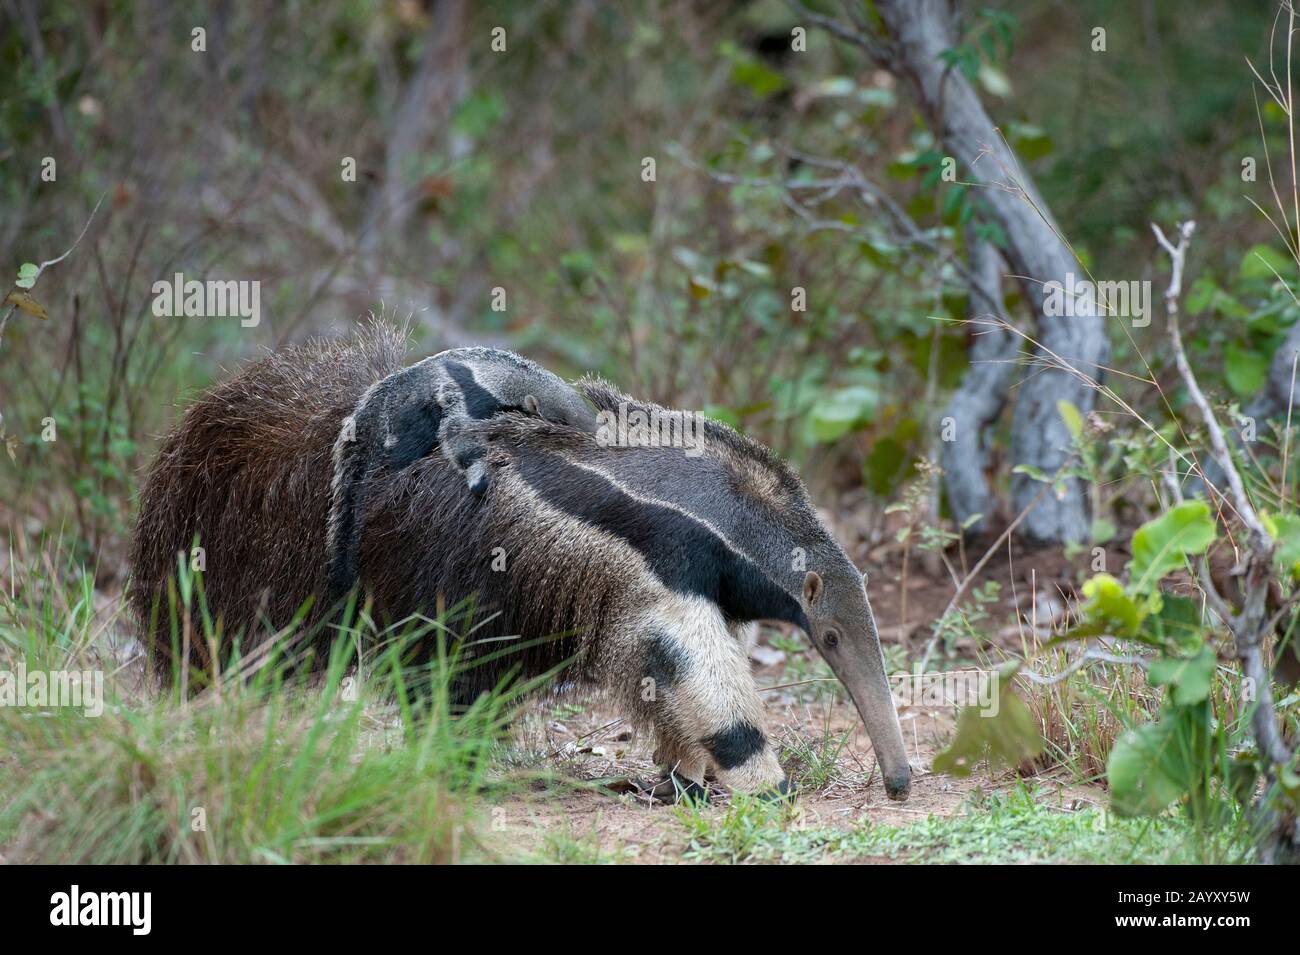 Una madre de anteador gigante en peligro de extinción (Myrmecophaga tridactyla) lleva a su bebé en la espalda en Caiman Ranch en el Pantanal Sur en Brasil. Foto de stock